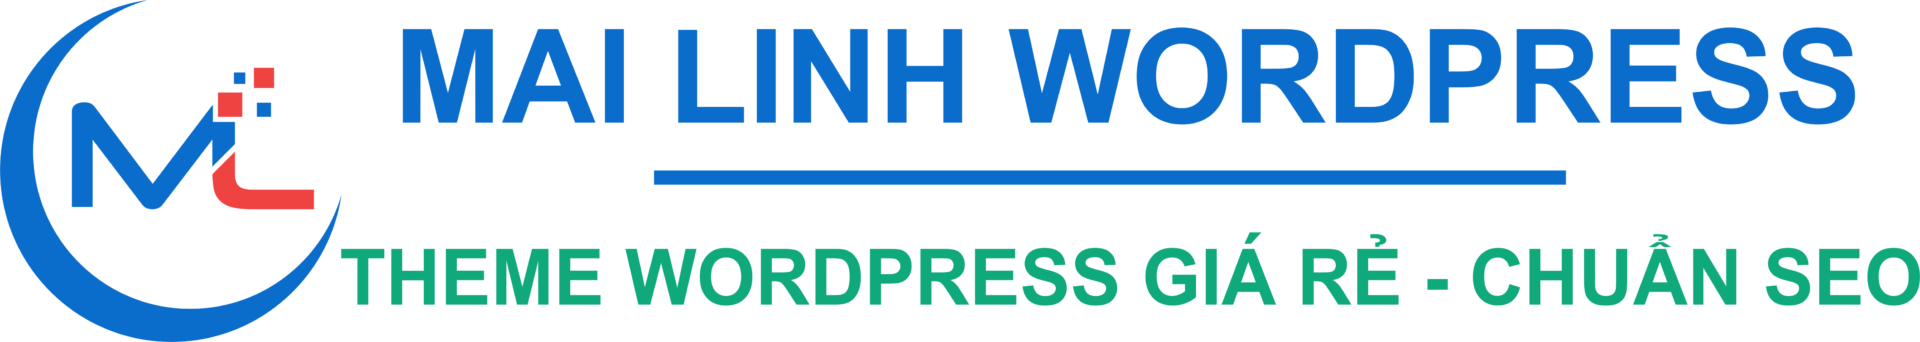 Theme Wordpress giá rẻ, đẹp, chuẩn SEO – Đã Việt hóa